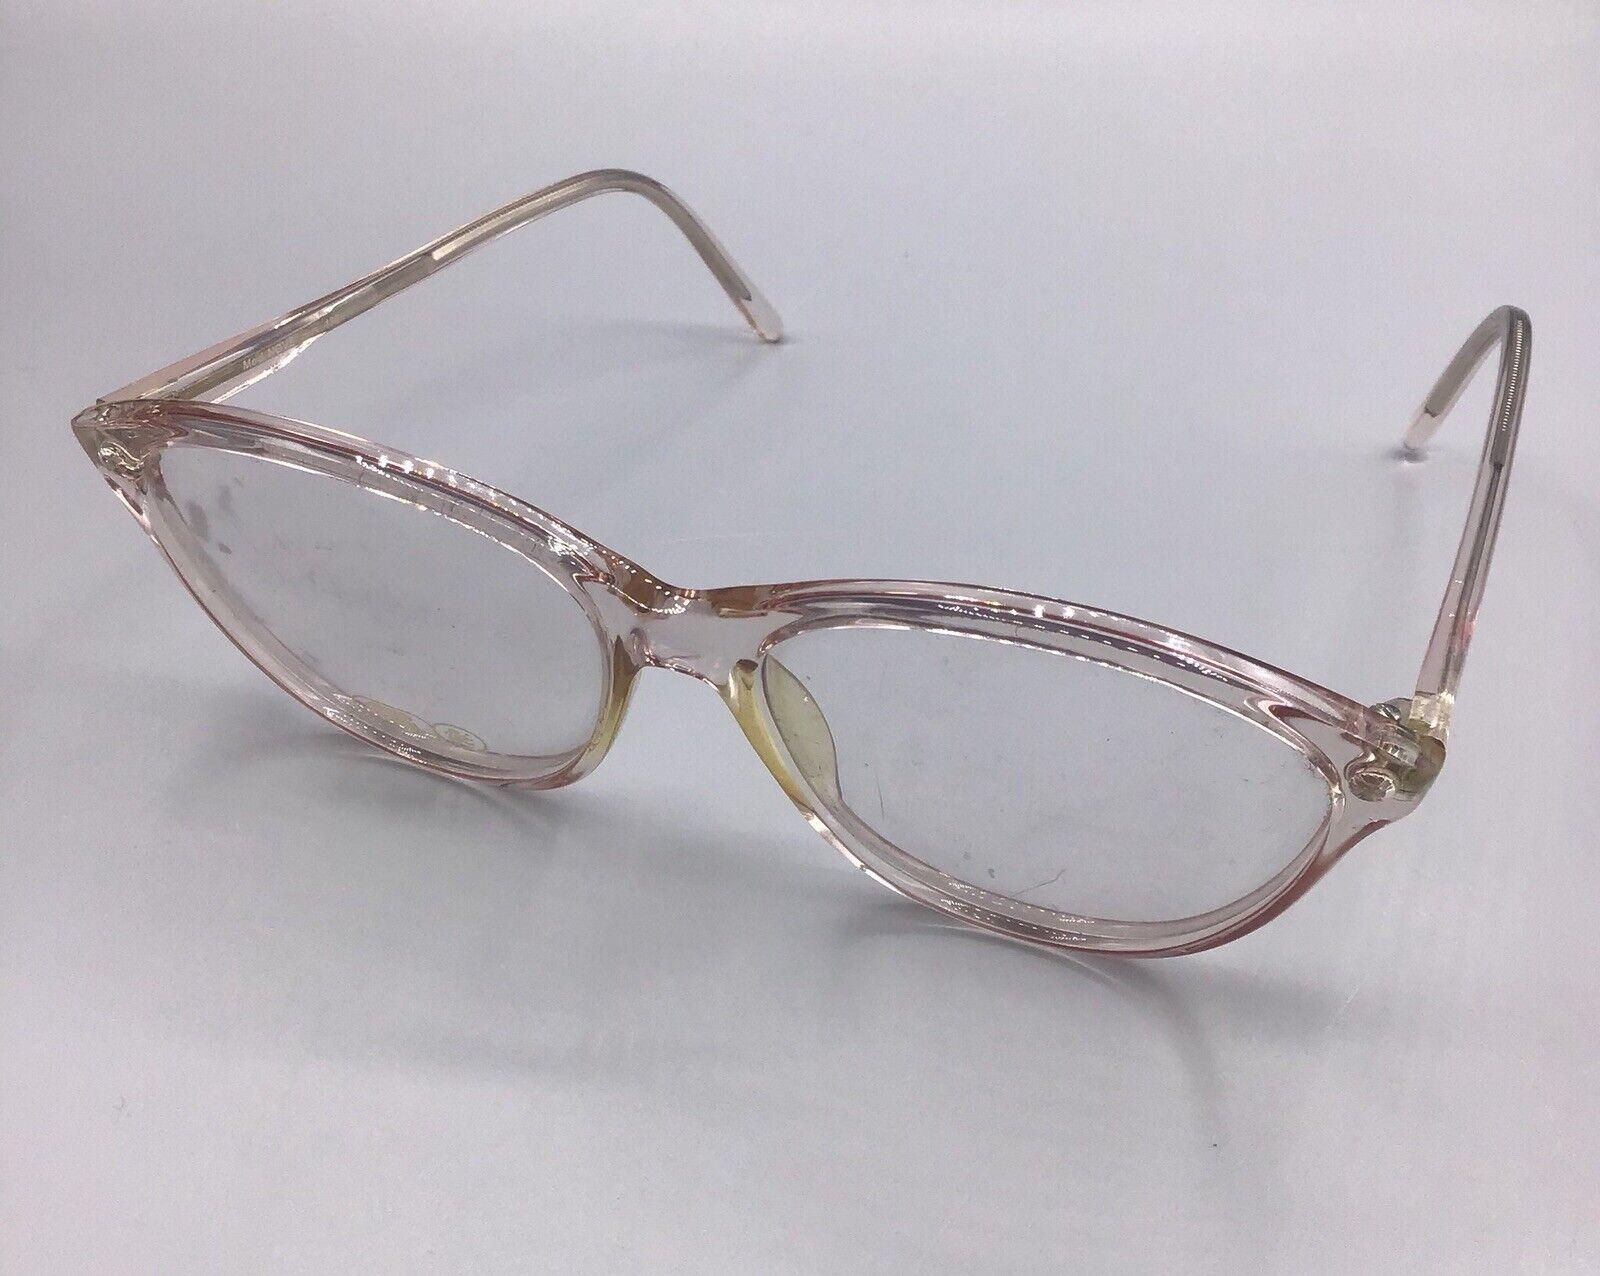 Morwen occhiale vintage eyewear frame italy col. 809 model NOVE brillen lunettes